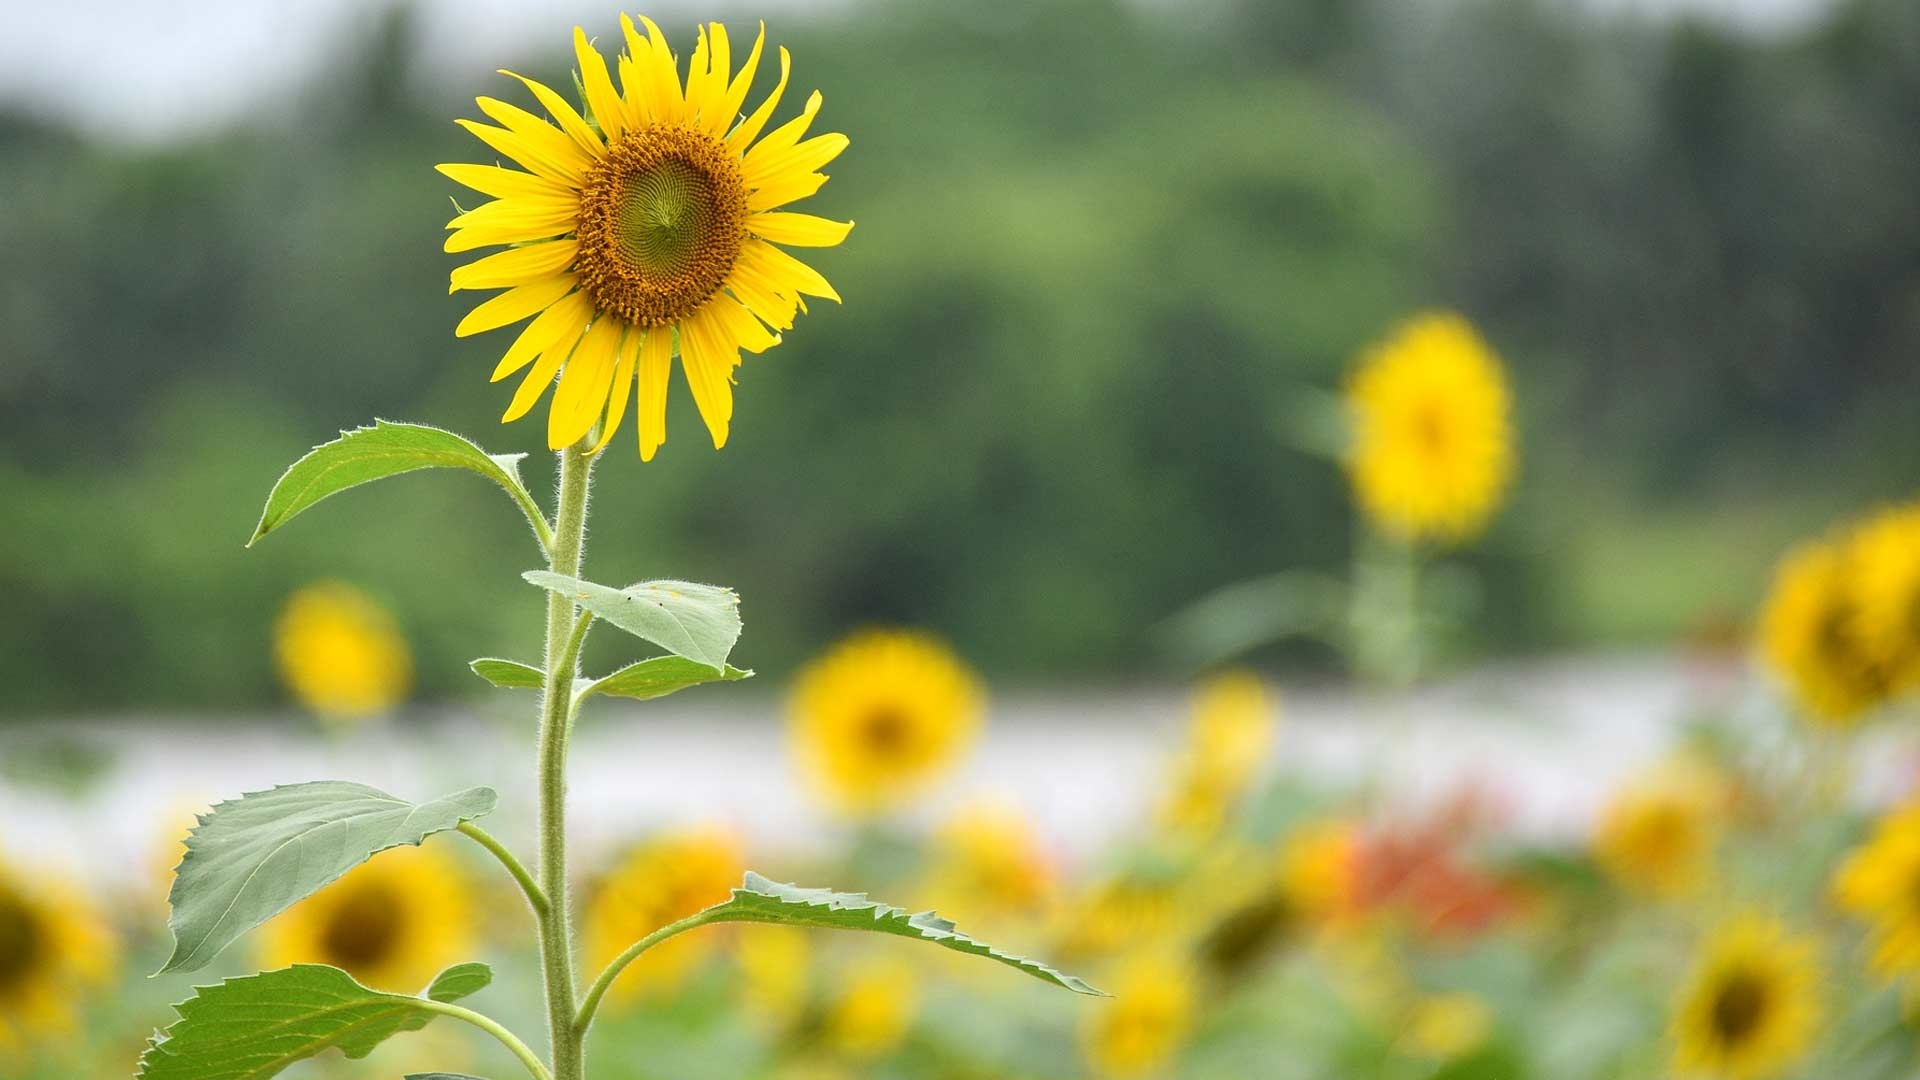 Sunflower hd background